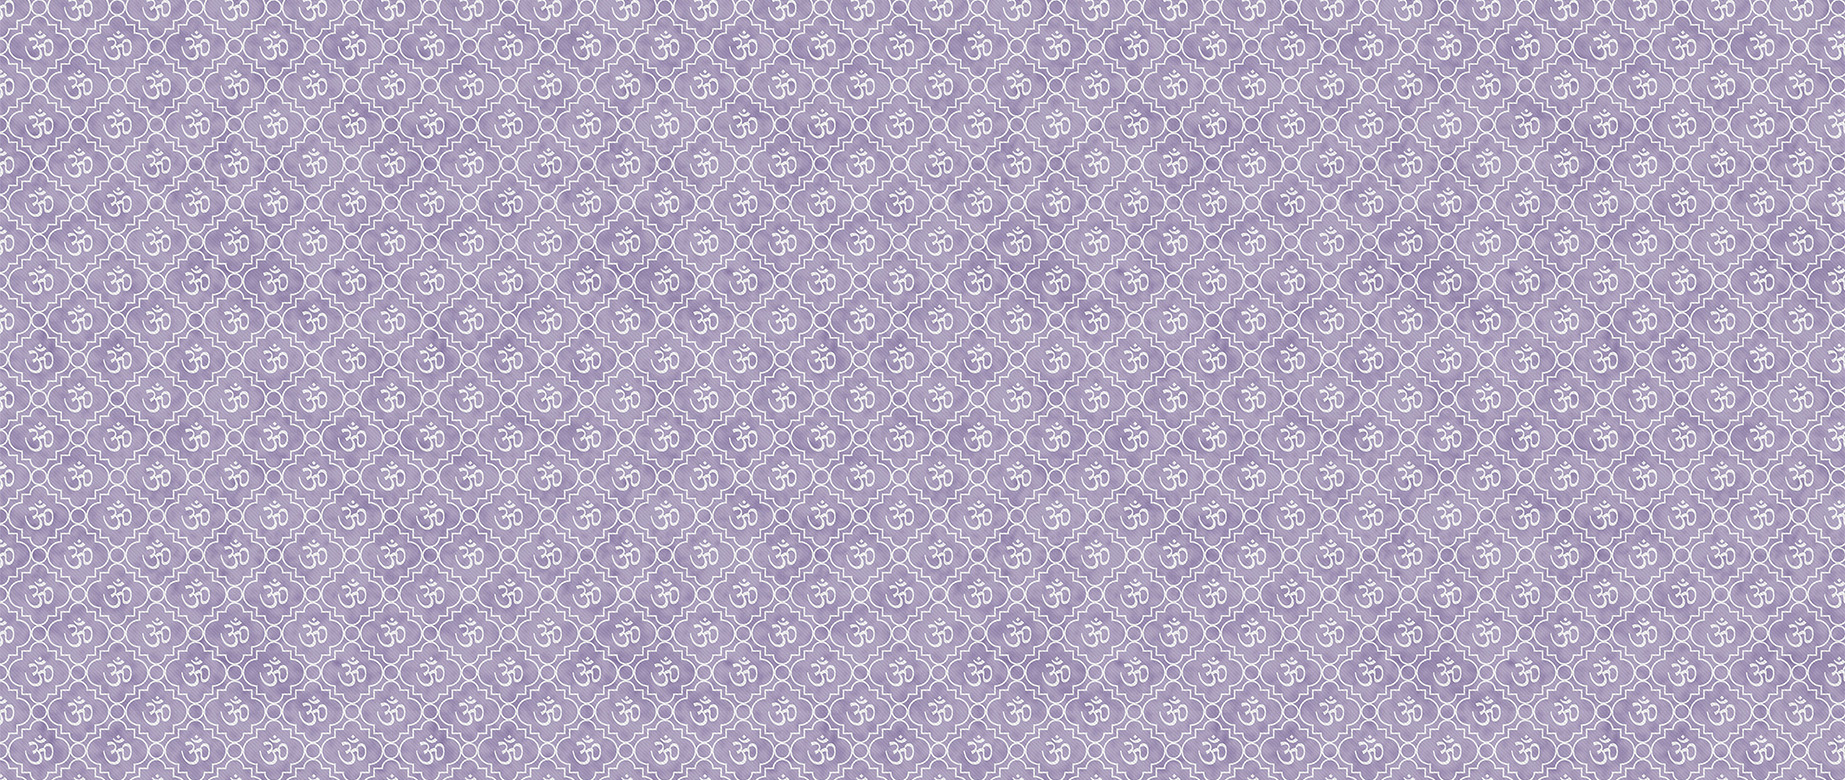 om-pattern-in-purple-wallpapers-full-wide-view